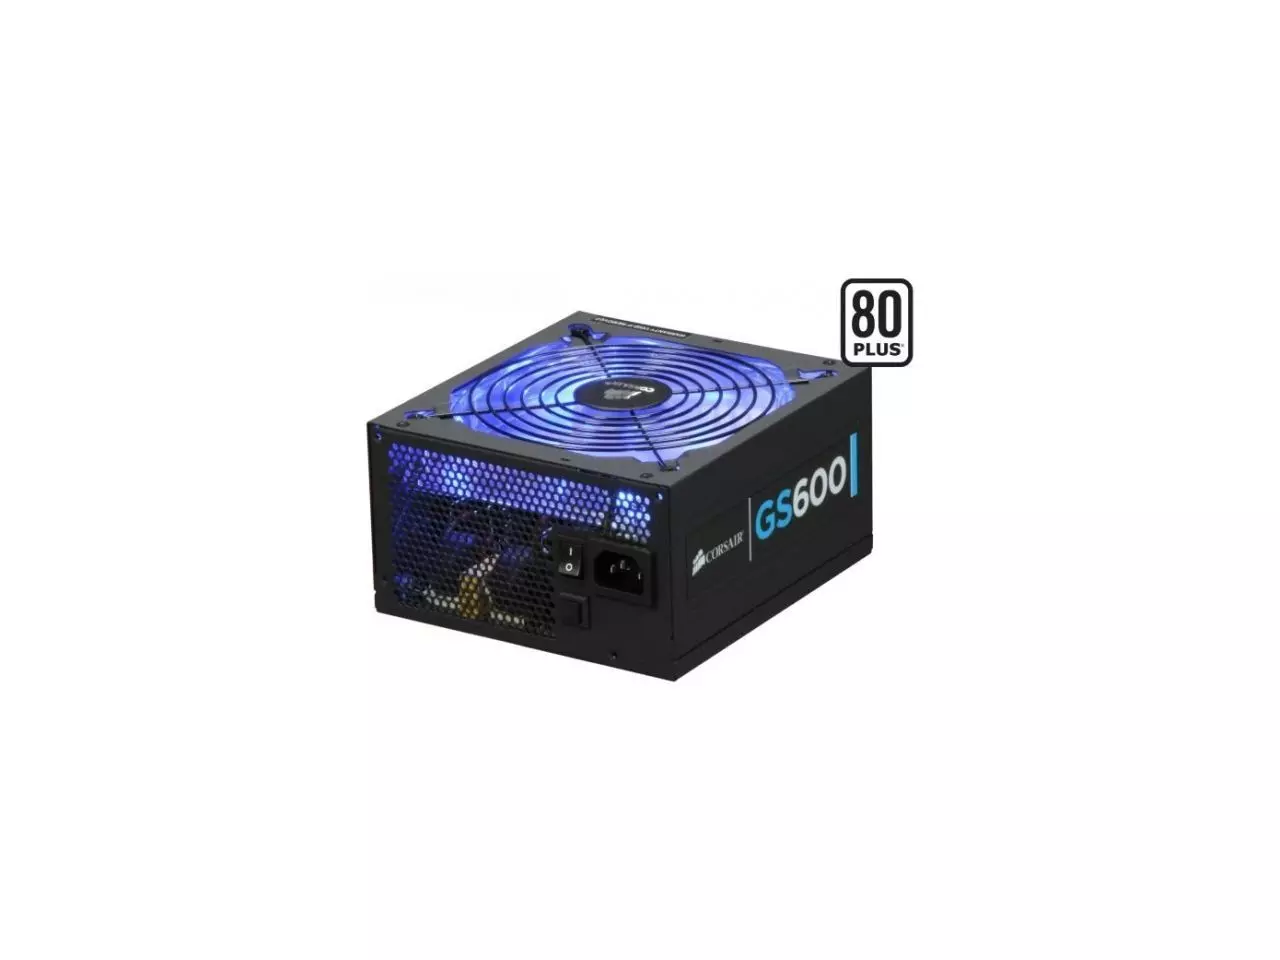 Fonte Gamer Gamemax GS600 600 Watts 80 Plus - Características e  Especificações 